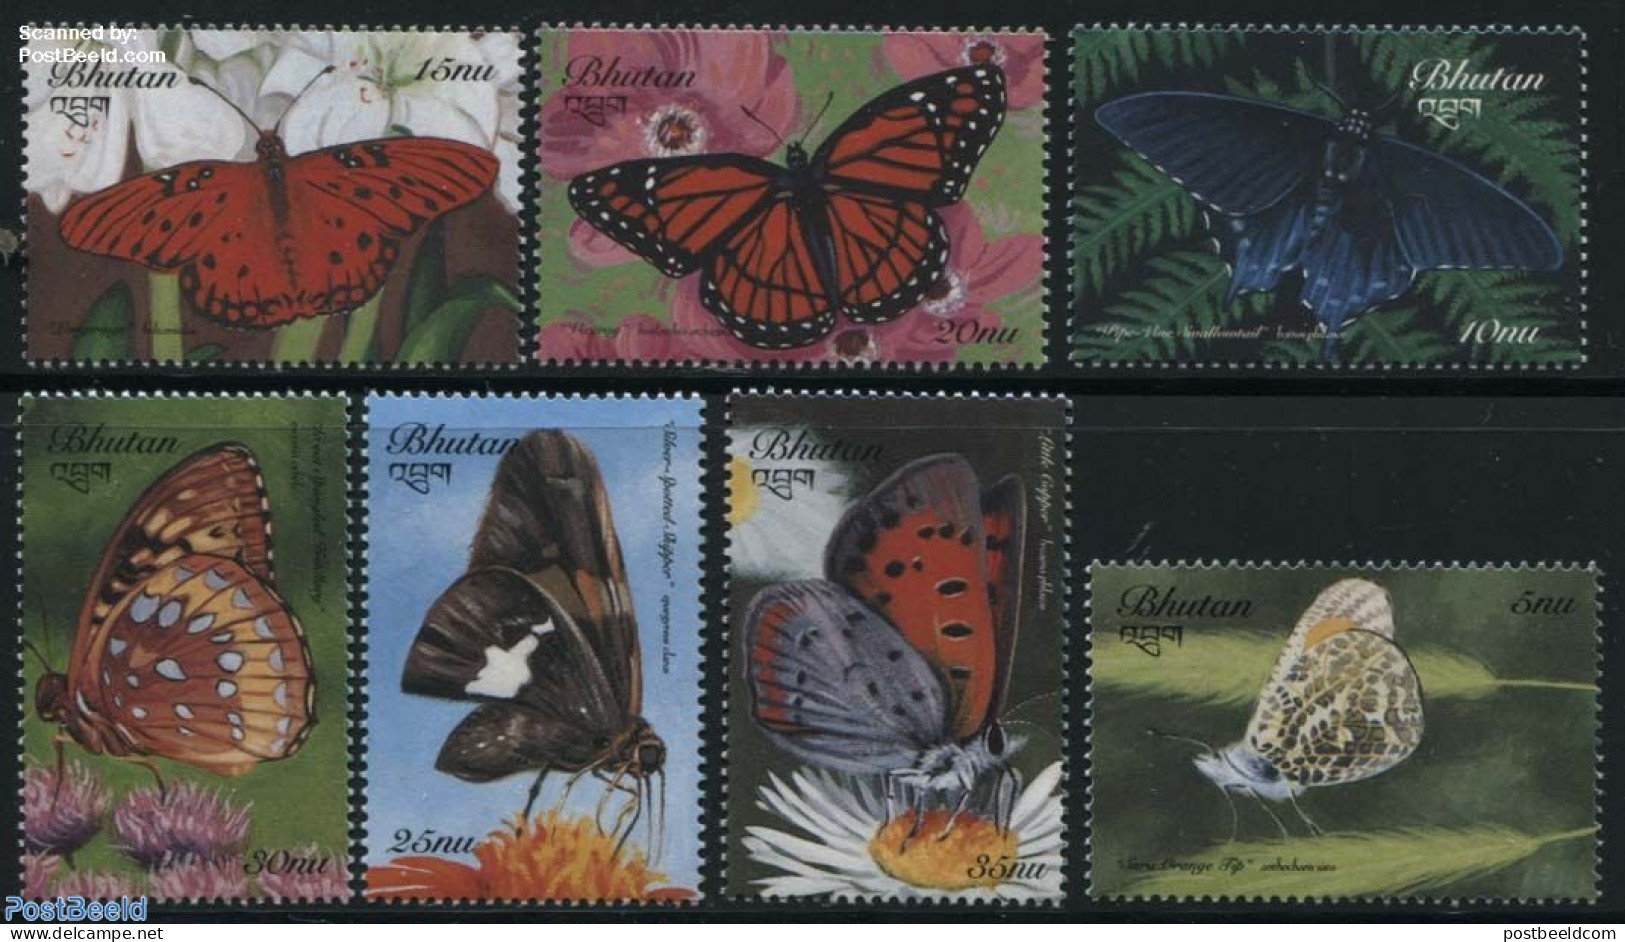 Bhutan 1999 Butterflies 7v, Mint NH, Nature - Butterflies - Bhutan